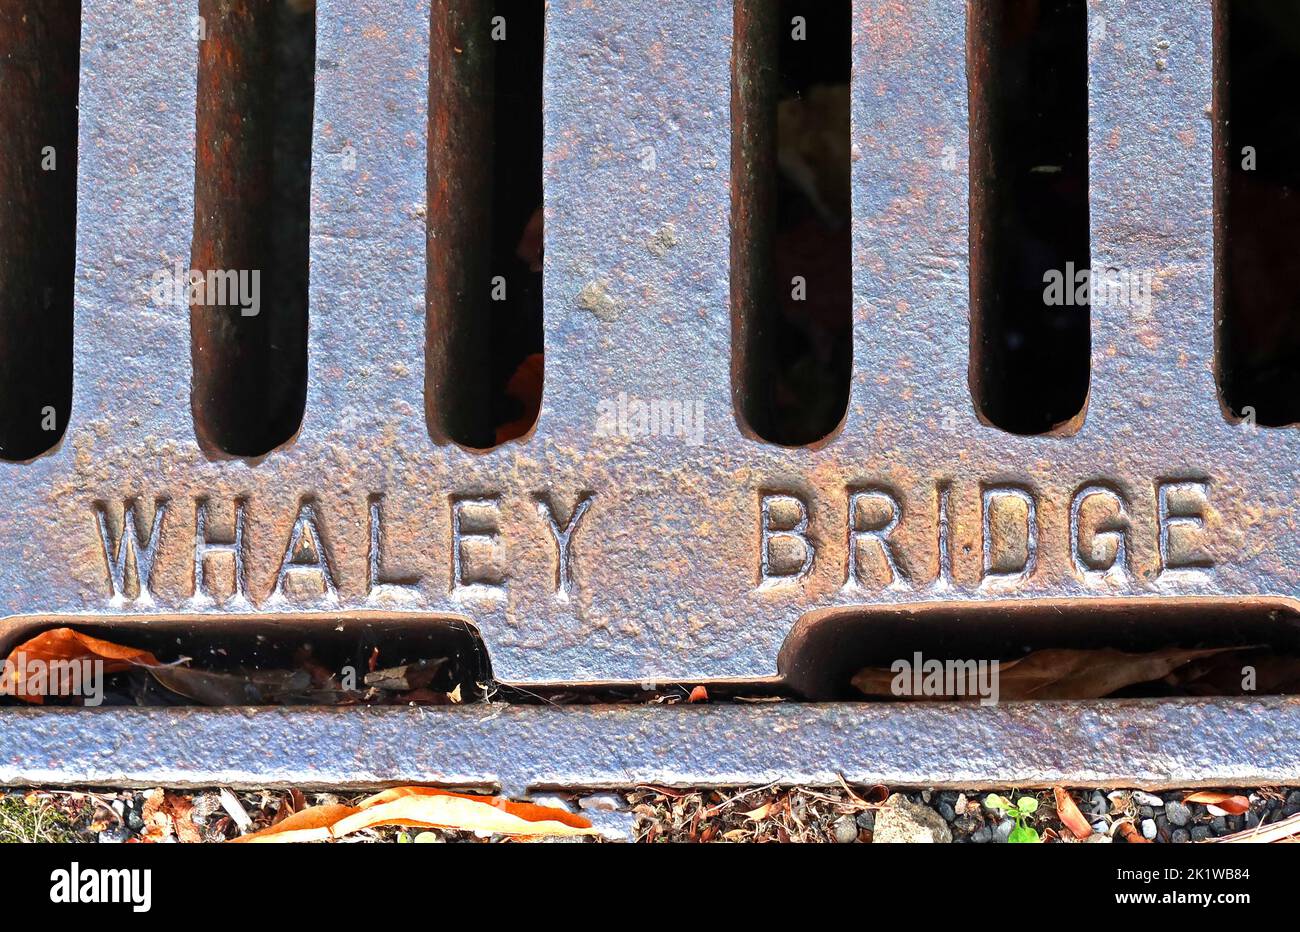 Grille en fonte rouillée gaufrée, gaufrée avec Whaley Bridge, High Peak, Derbyshire, Angleterre, Royaume-Uni, SK23 7AA Banque D'Images